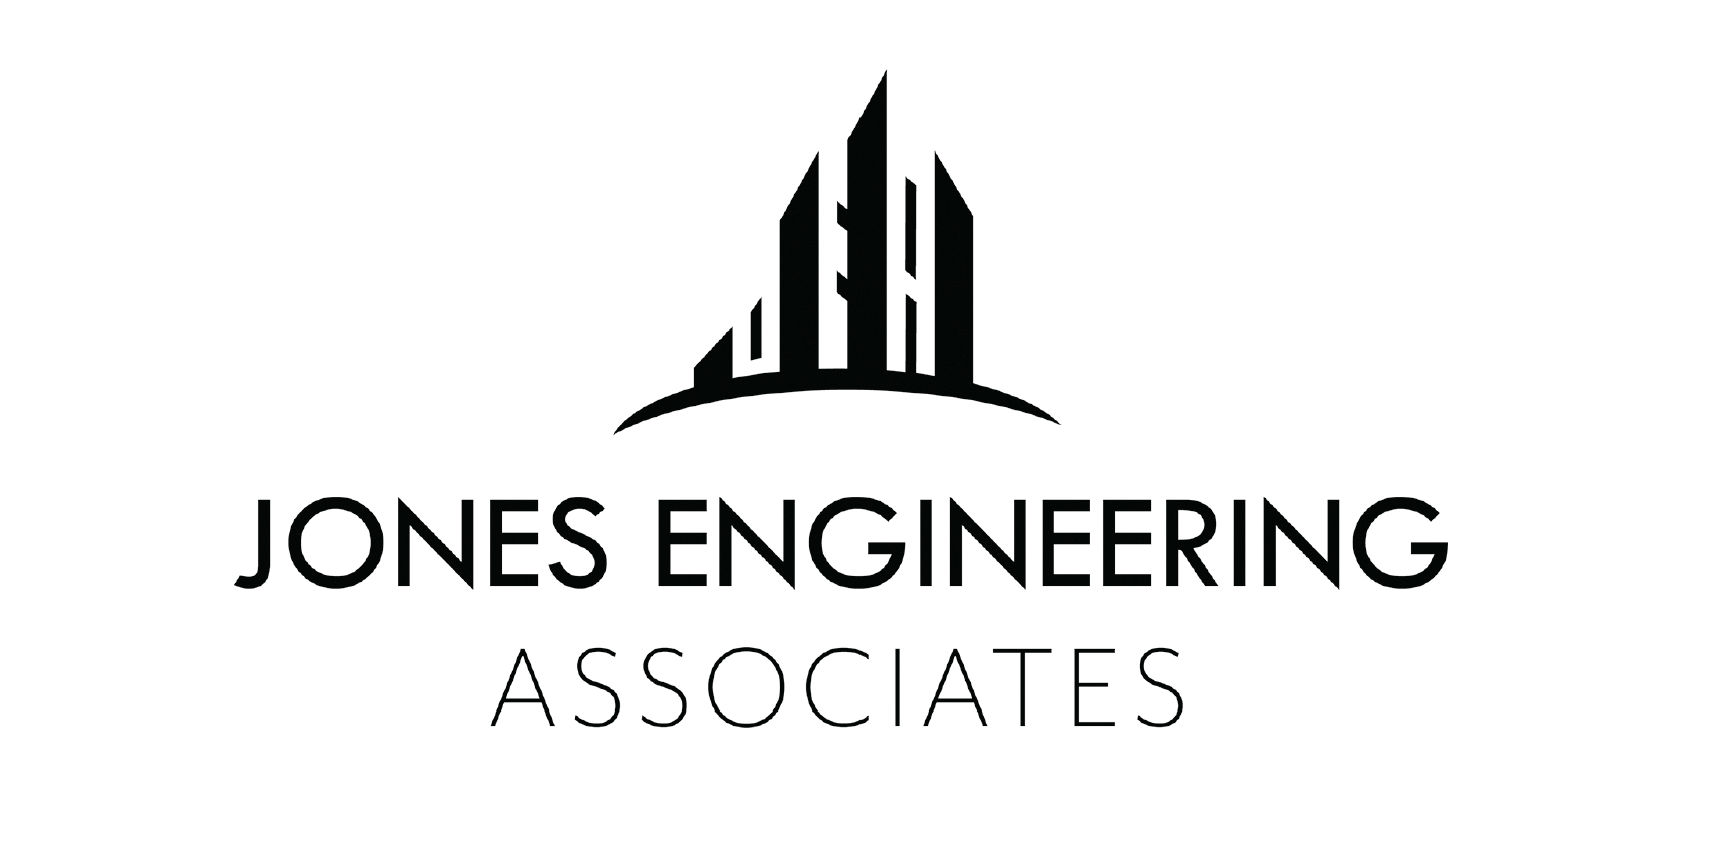 Jones Engineering Associates